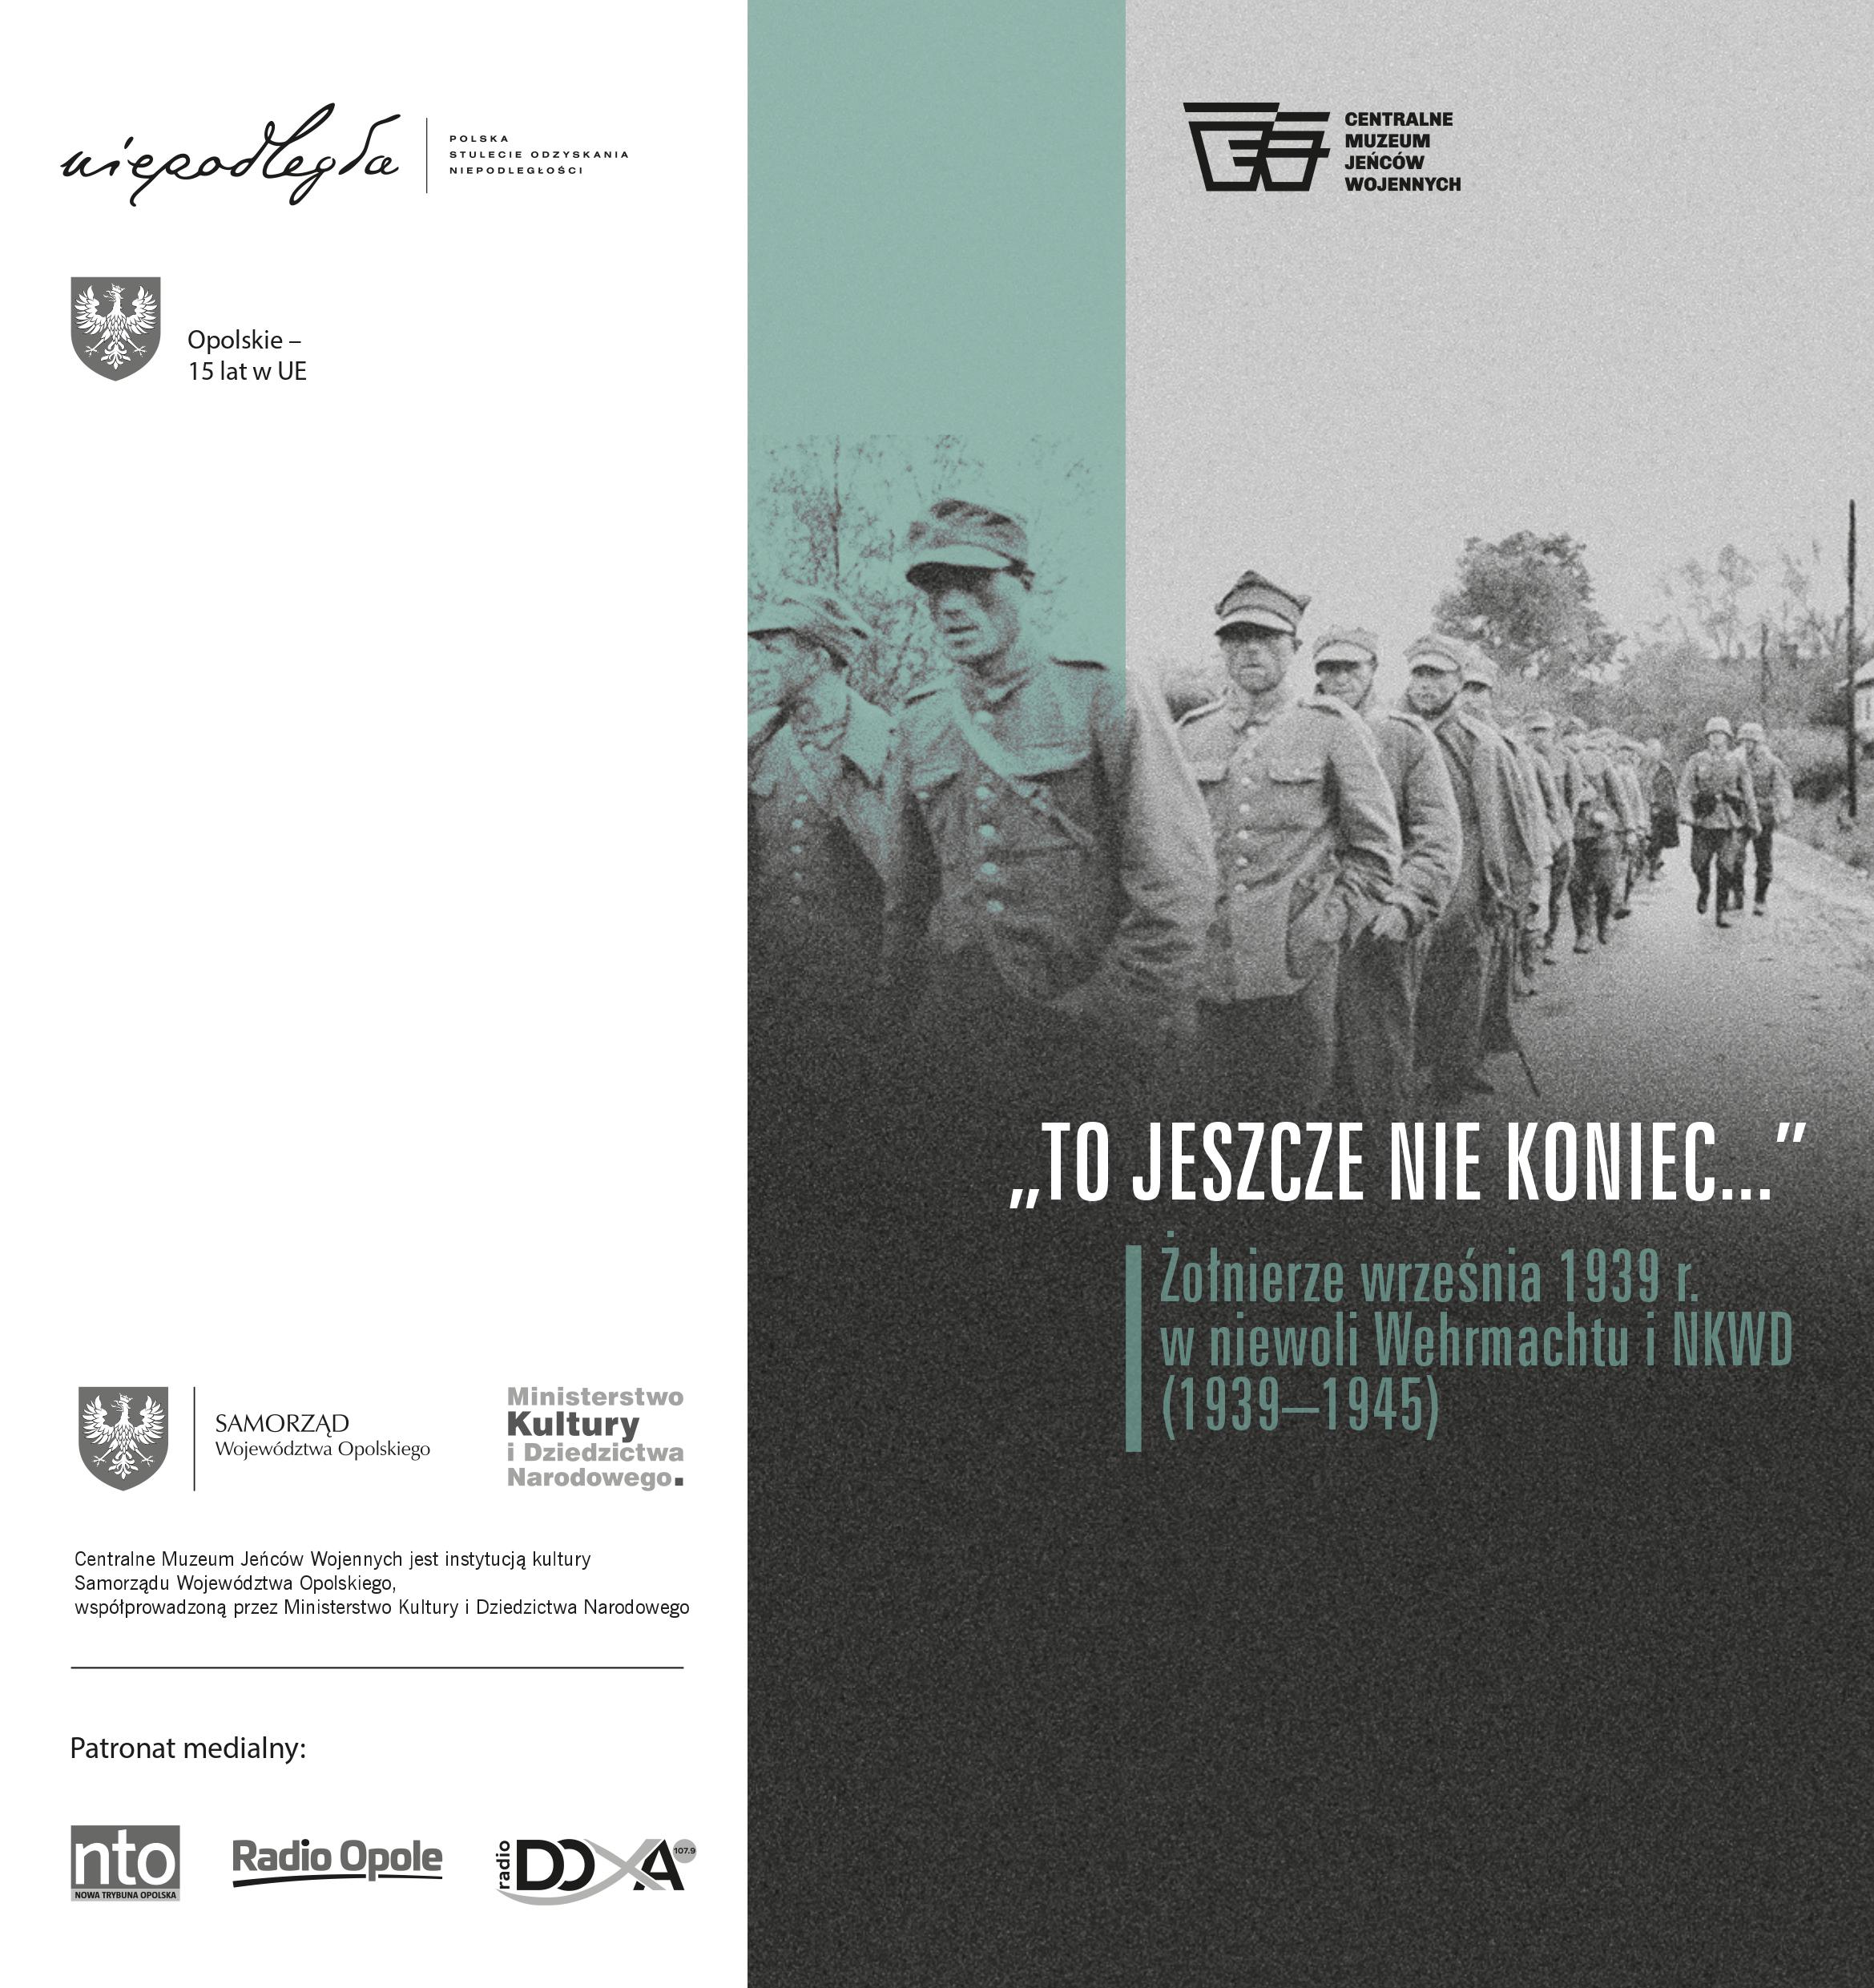 Wystawa „To jeszcze nie koniec&#8230;” Żołnierze września 1939 w niewoli Wehrmachtu i NKWD (1939-1945)